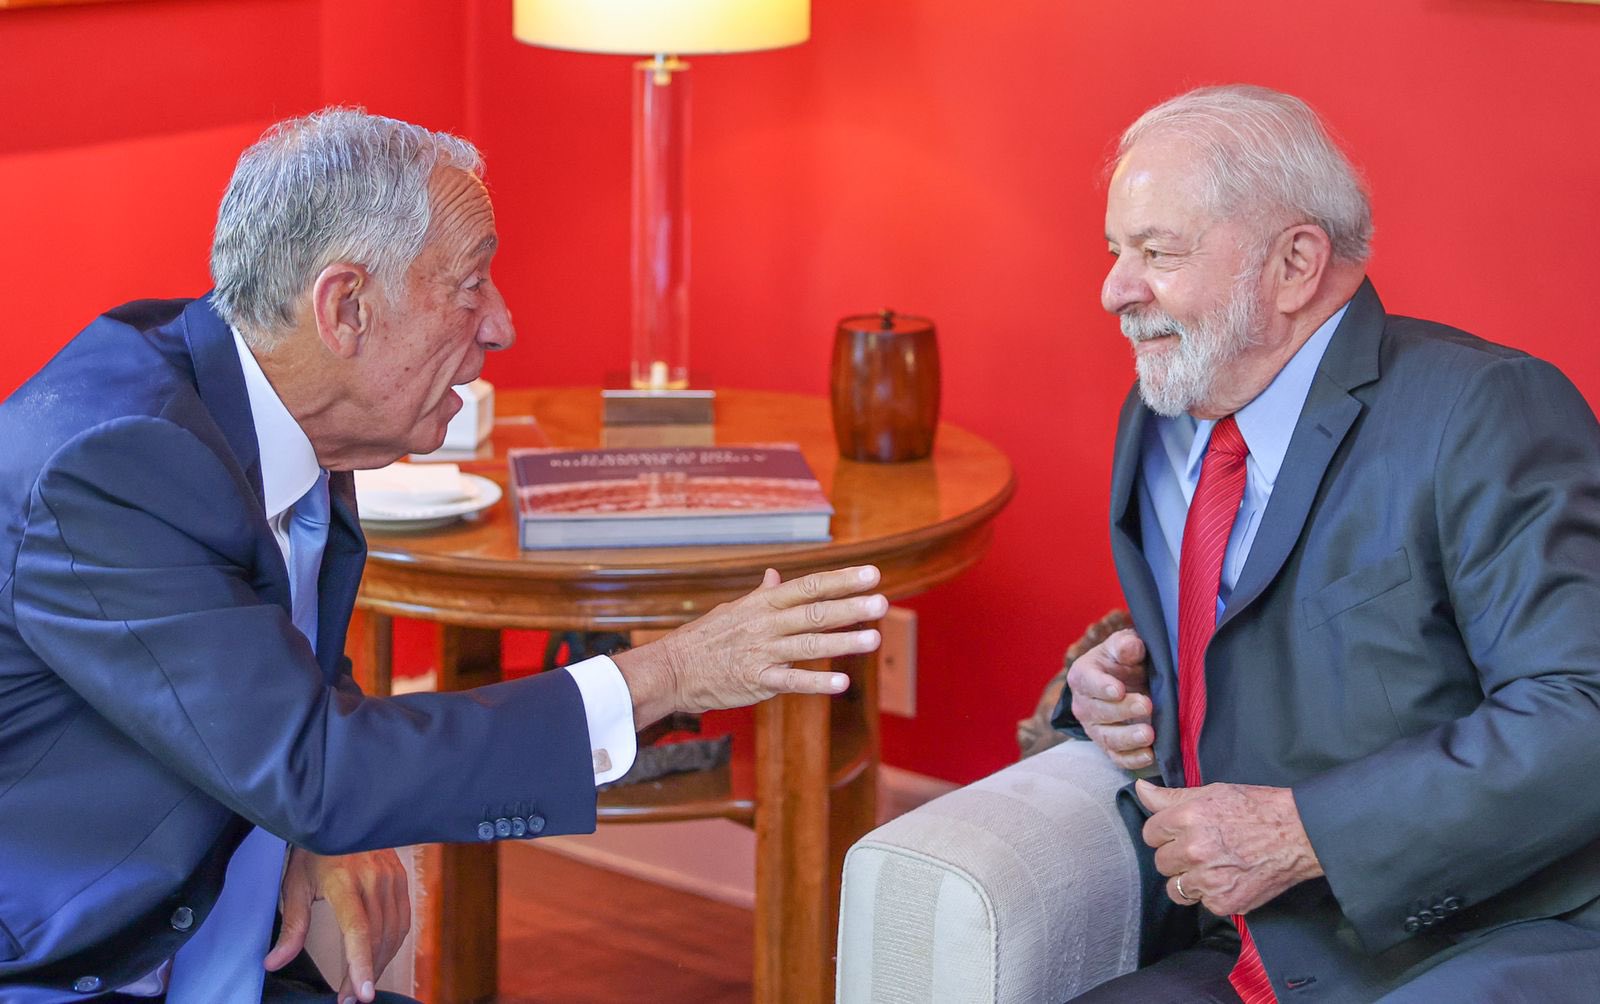 O presidente de Portugal, Marcelo Rebelo de Souza, e o ex-presidente brasileiro Luiz Inácio Lula da Silva (PT)